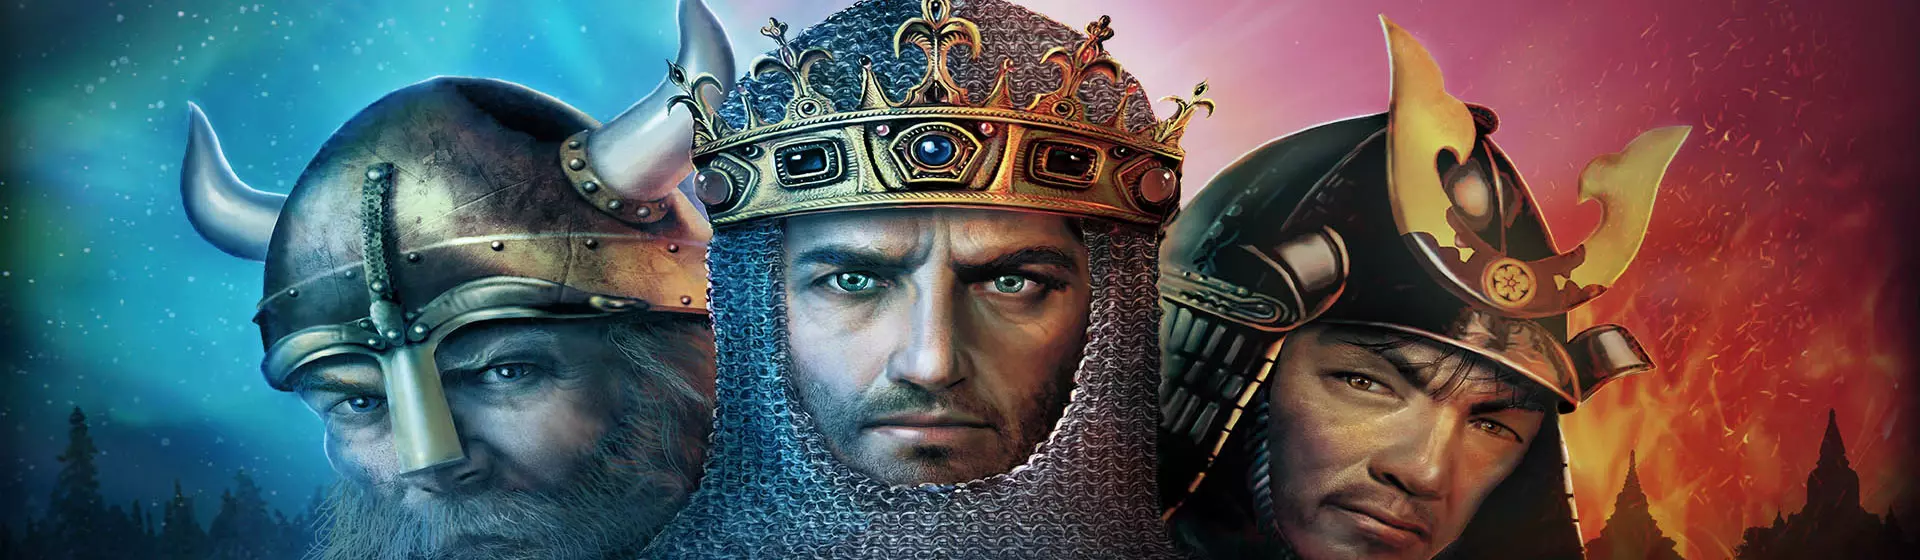 Arte do jogo Age of Empires com os rostos de um rei no centro, um viking à esquerda e um samurai à direita